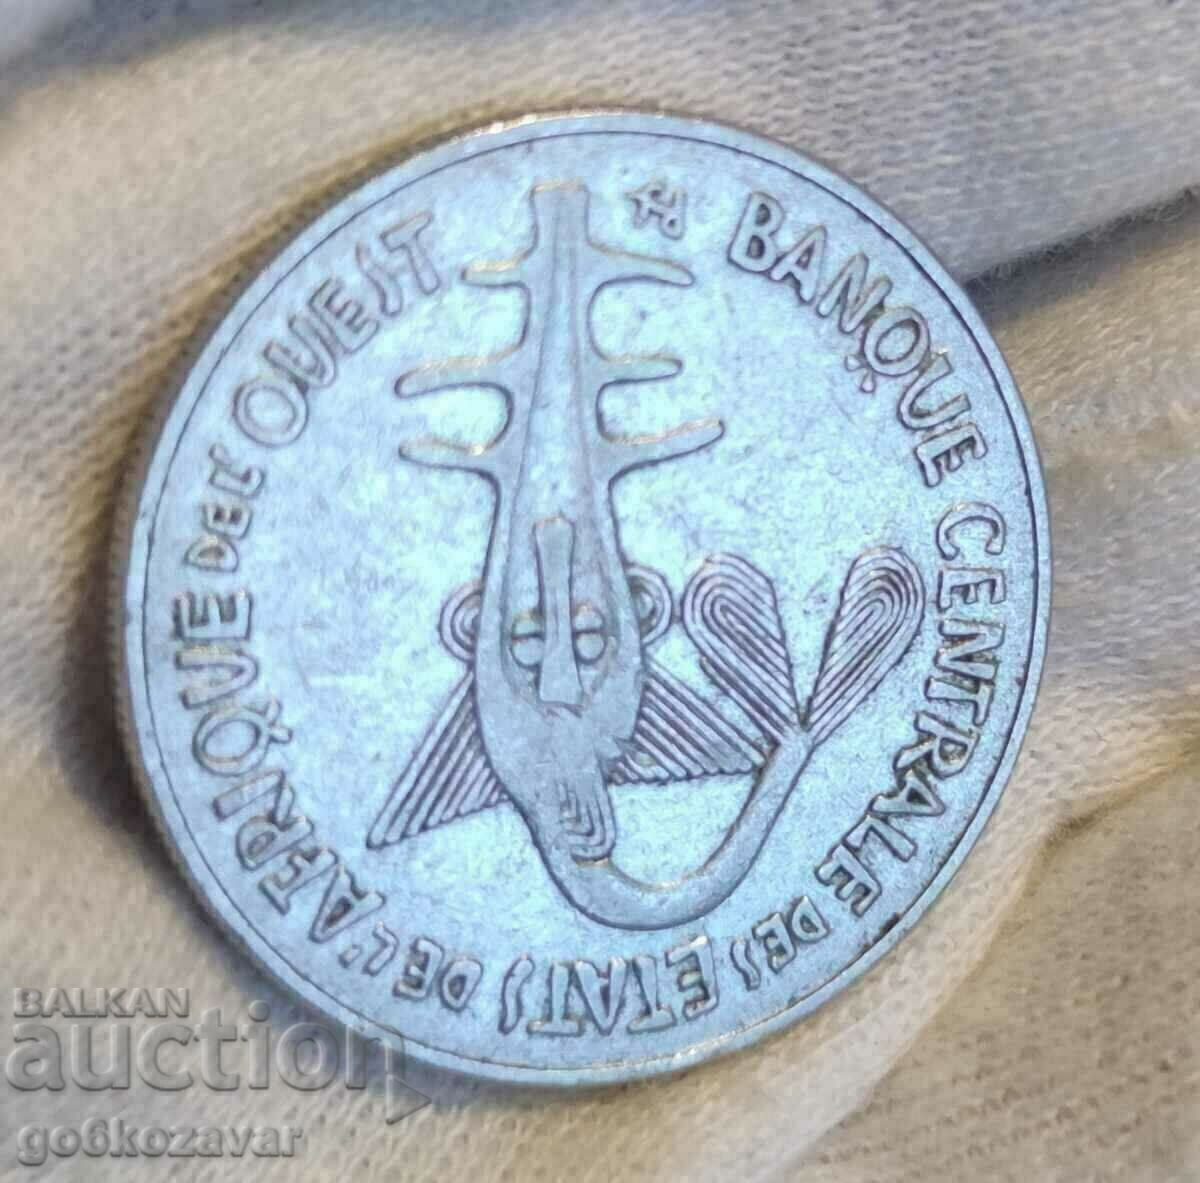 West Africa 100 Francs 1987